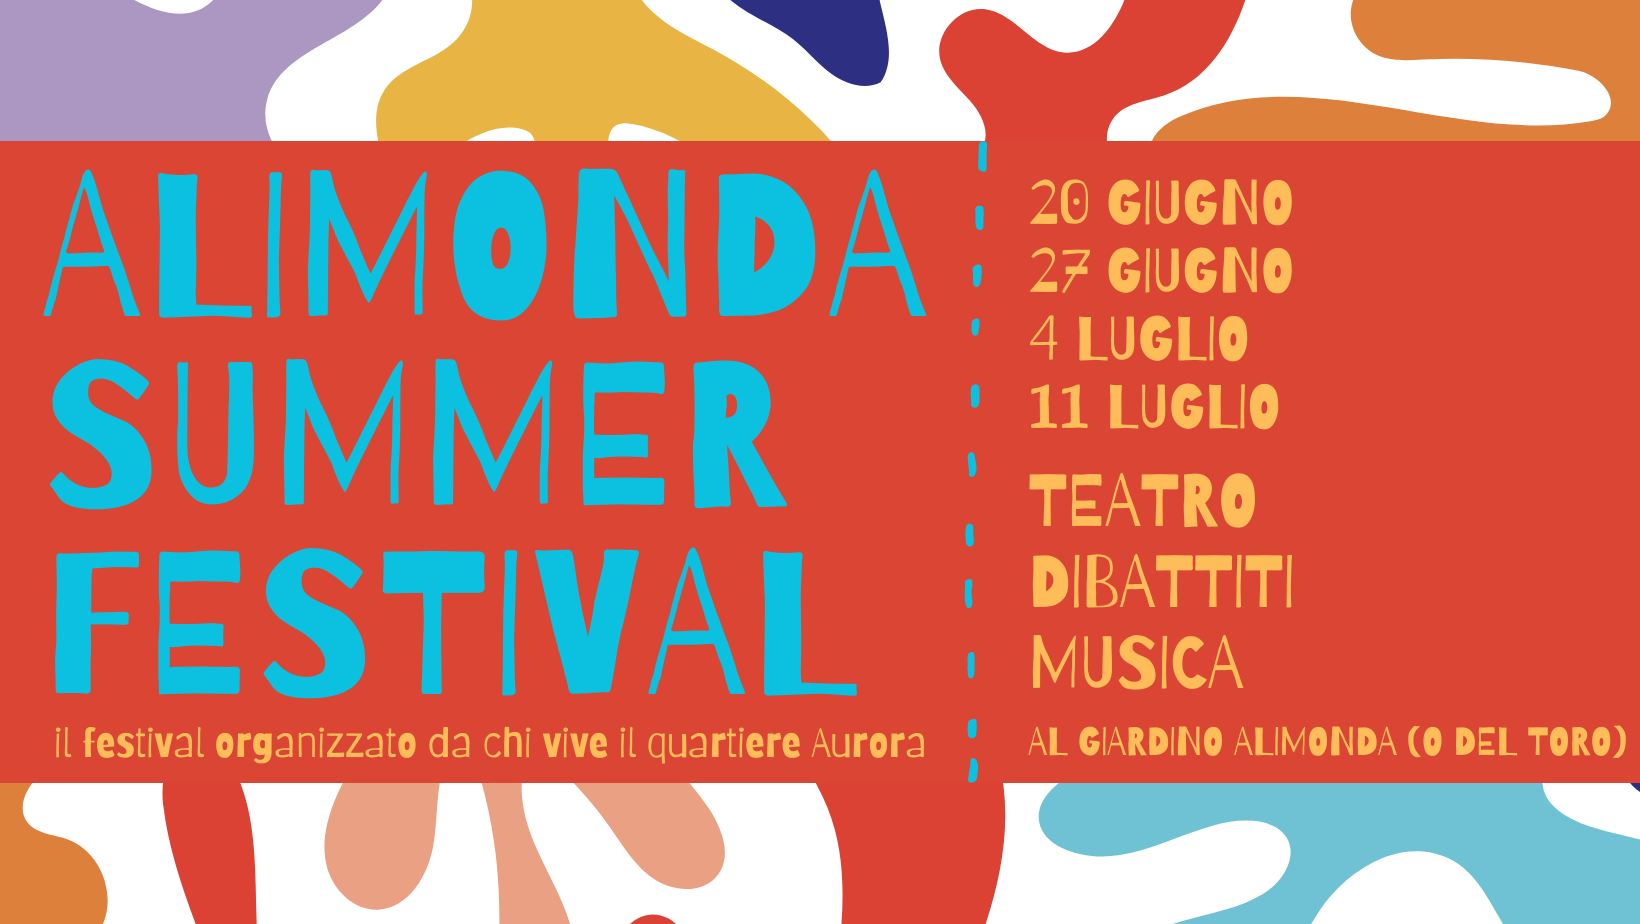 Alimonda summer festival: dibattiti e spettacoli